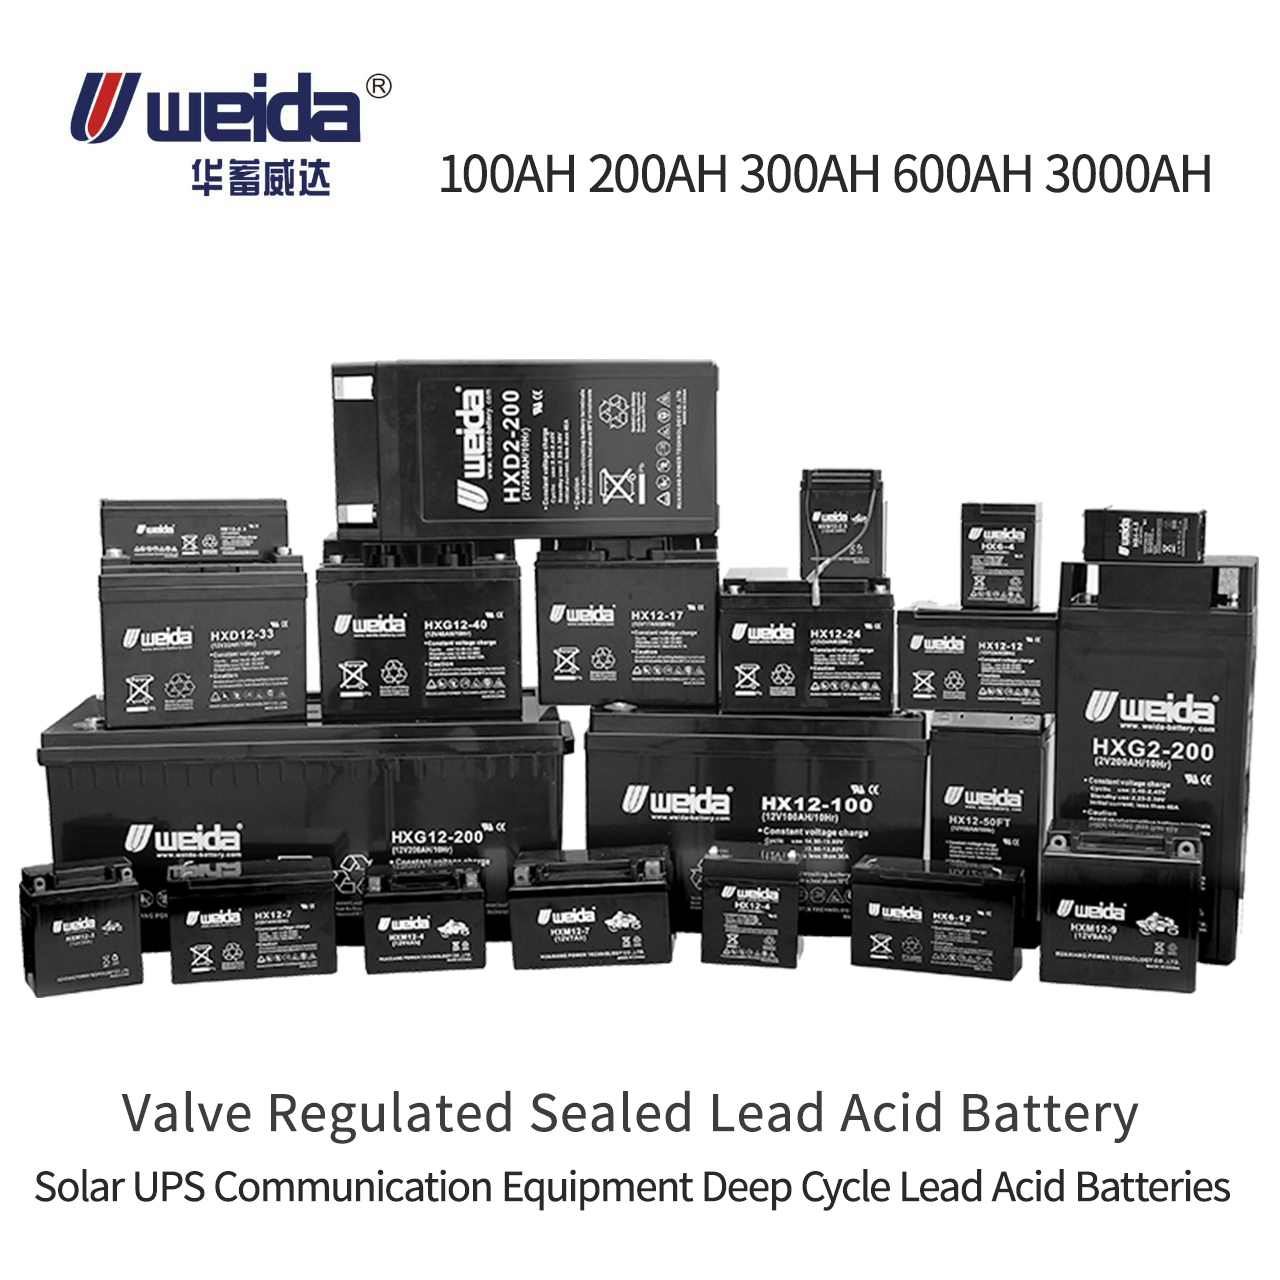 Weida® UPS sla bateri injap agm asid plumbum terkawal 100ah 200ah kitaran dalam bateri asid plumbum bateri asid plumbum solar